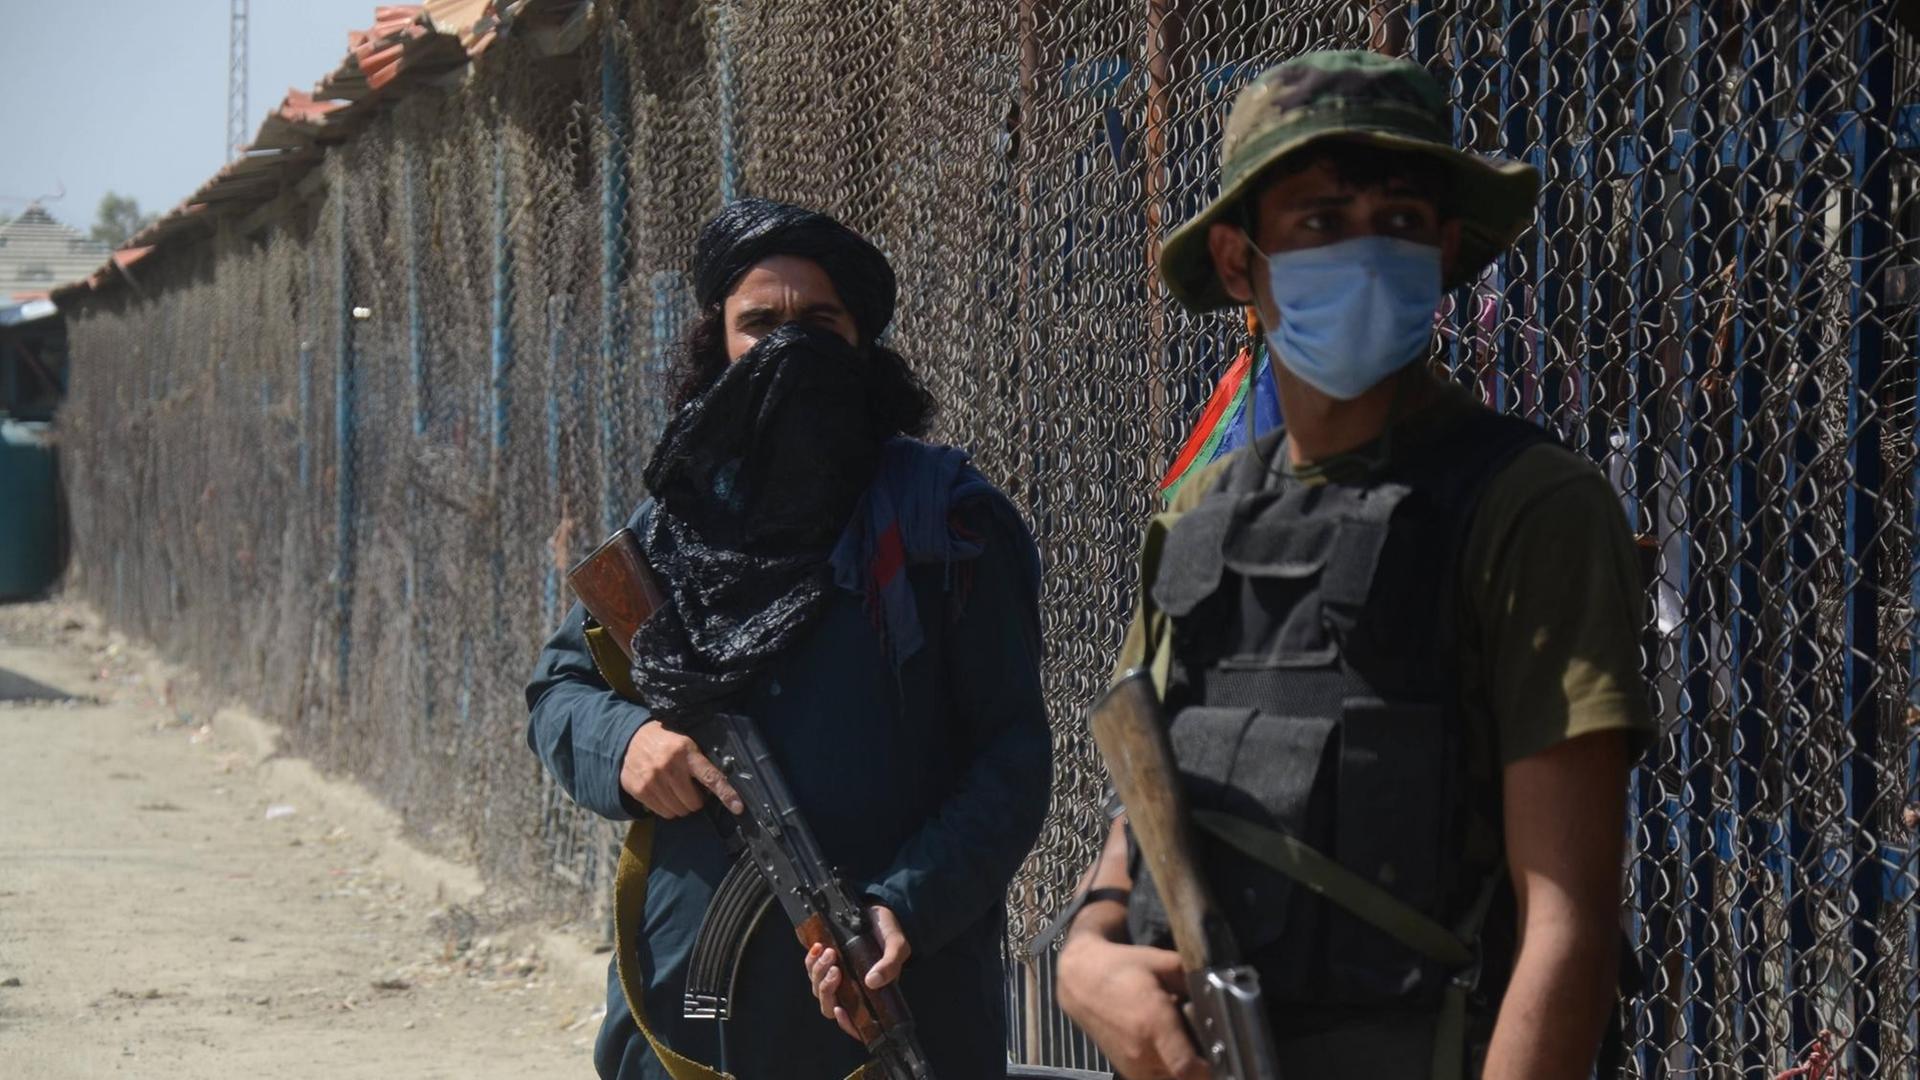 Ein Talibankämpfer und ein pakistanischer Soldat, beide bewaffnet, stehen am Grenzzaun zwischen Afghanistan und Pakistan.